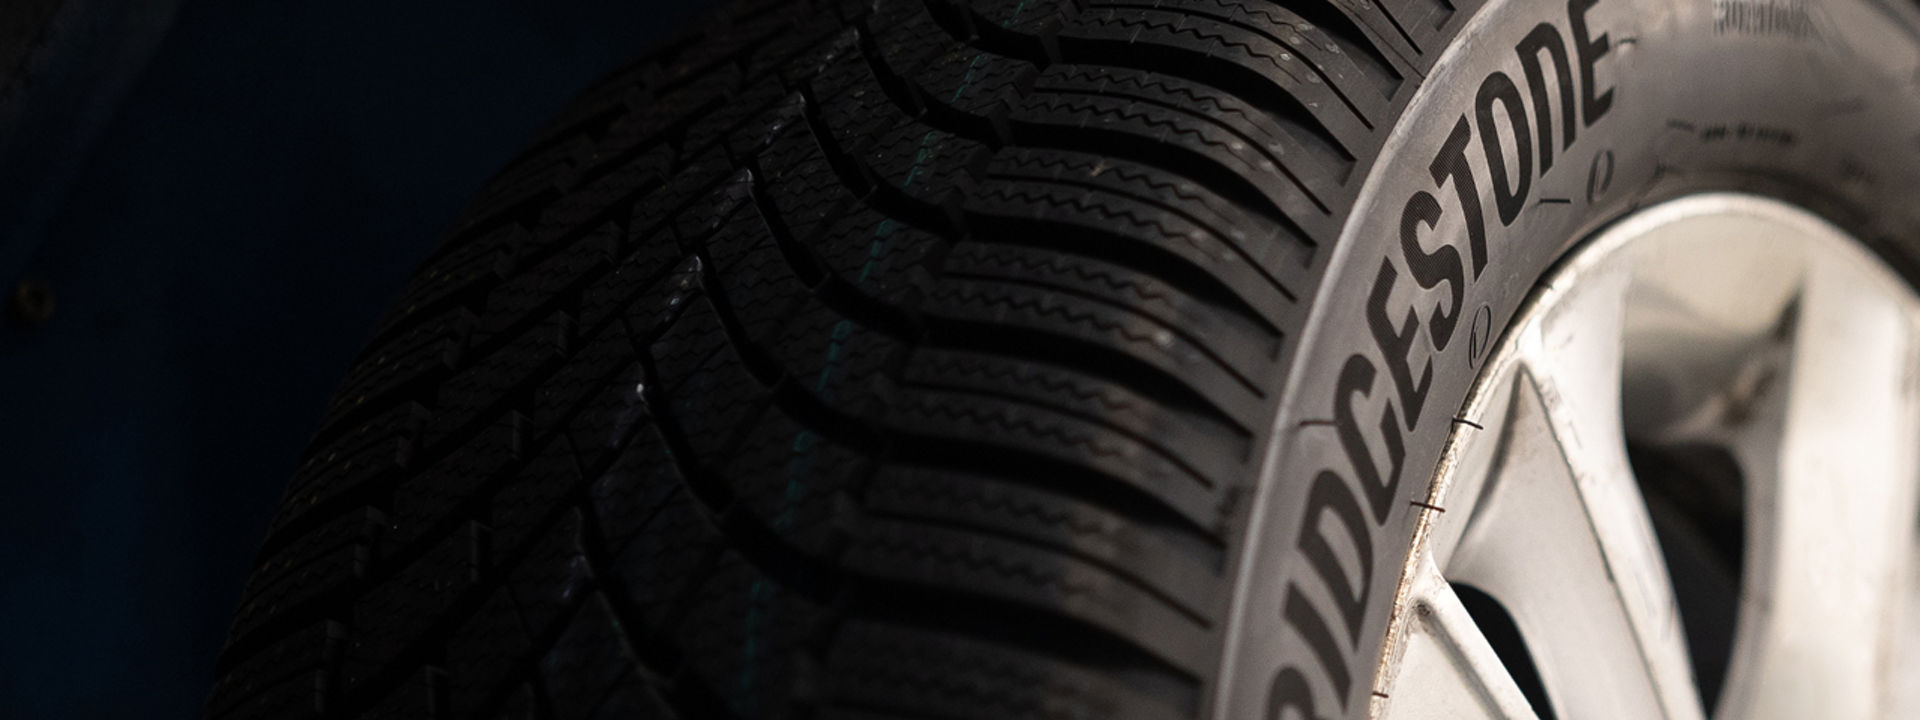 Close up of a Bridgestone tyre